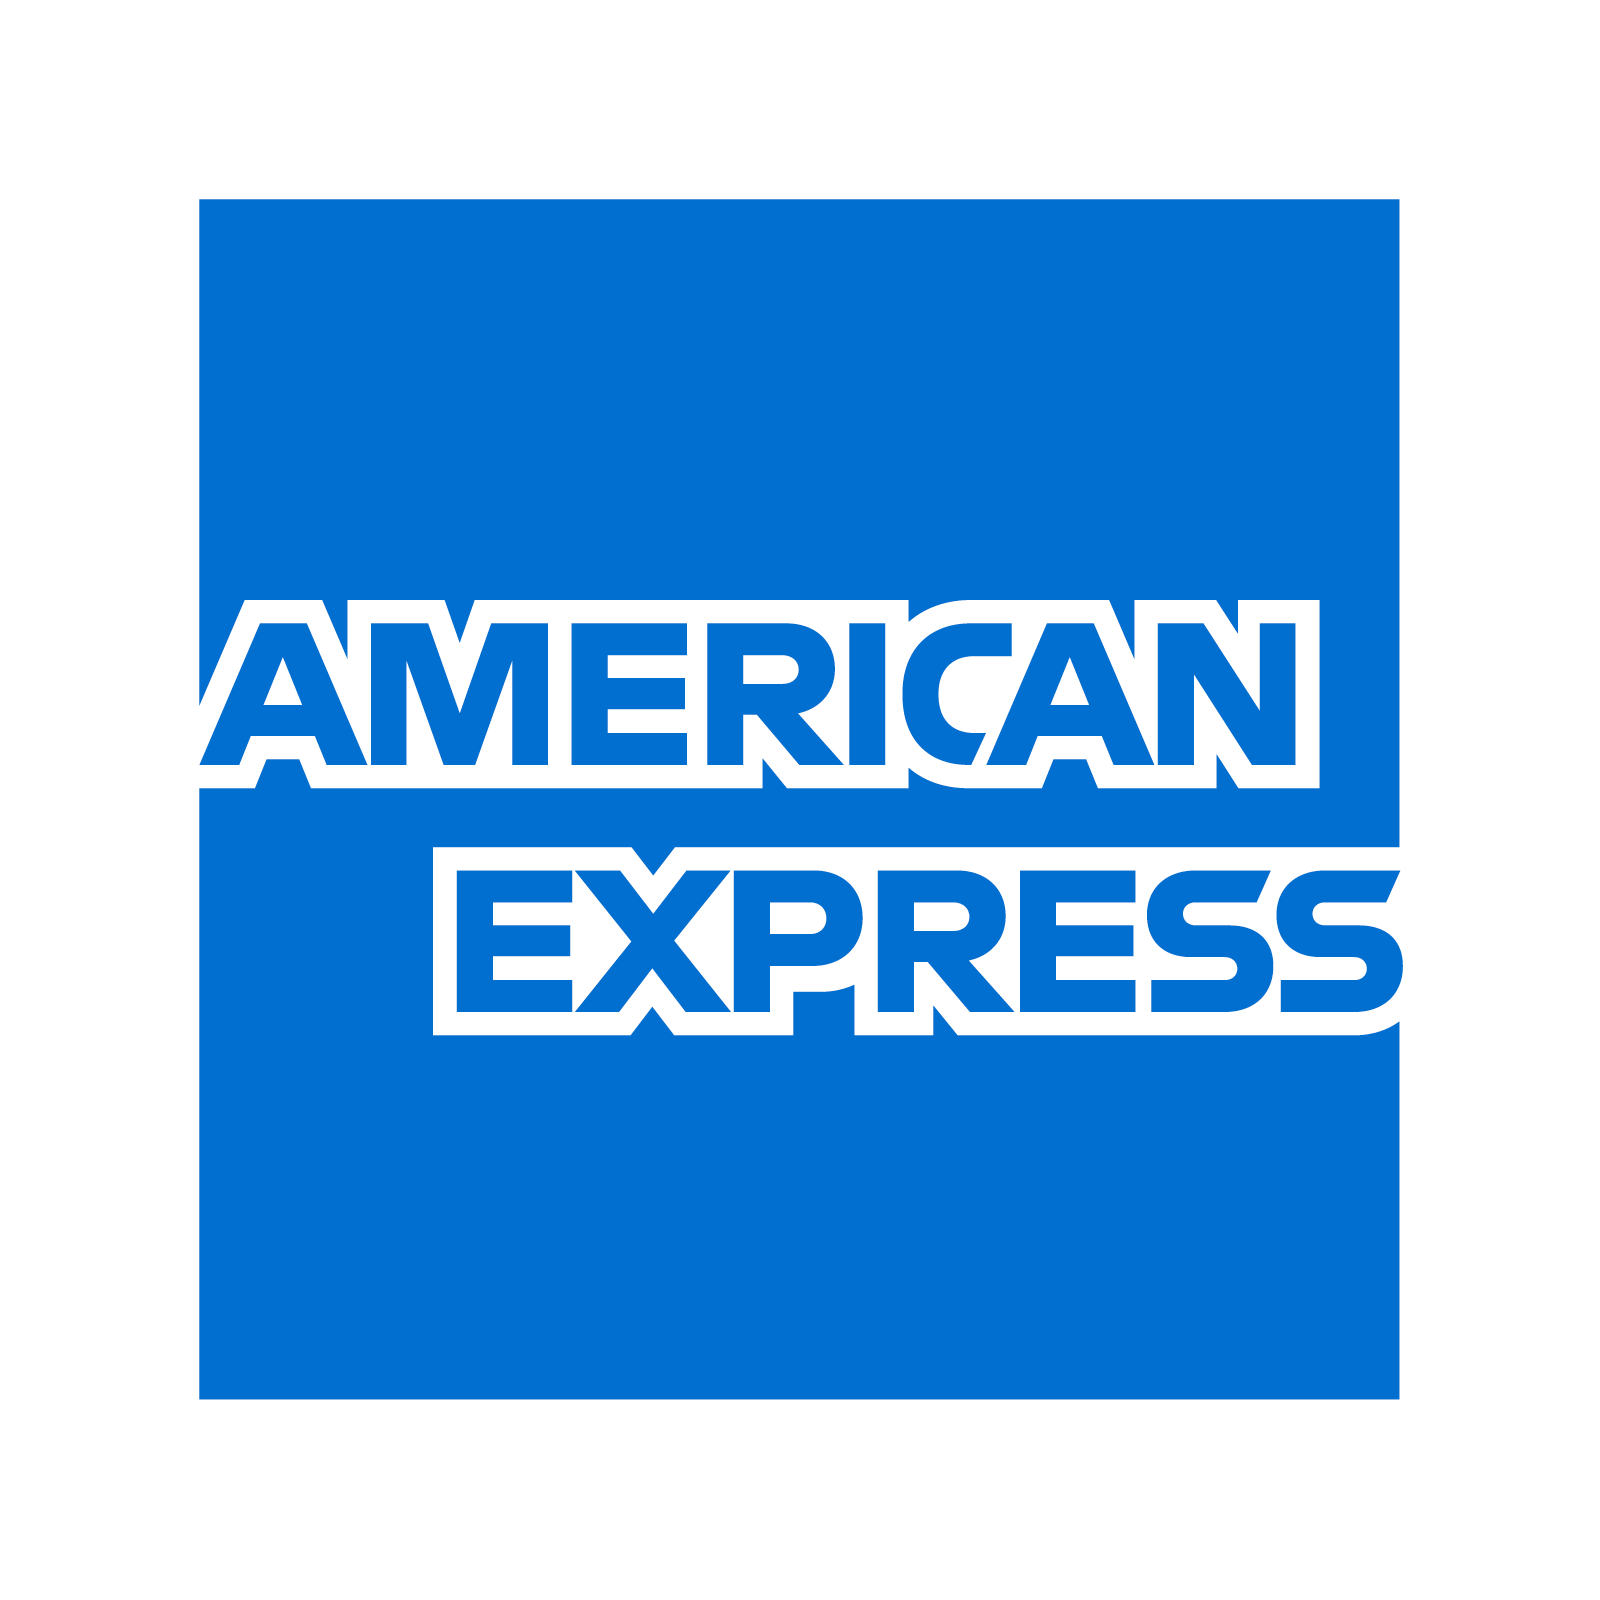 Imagen American Express PNNG de alta calidad